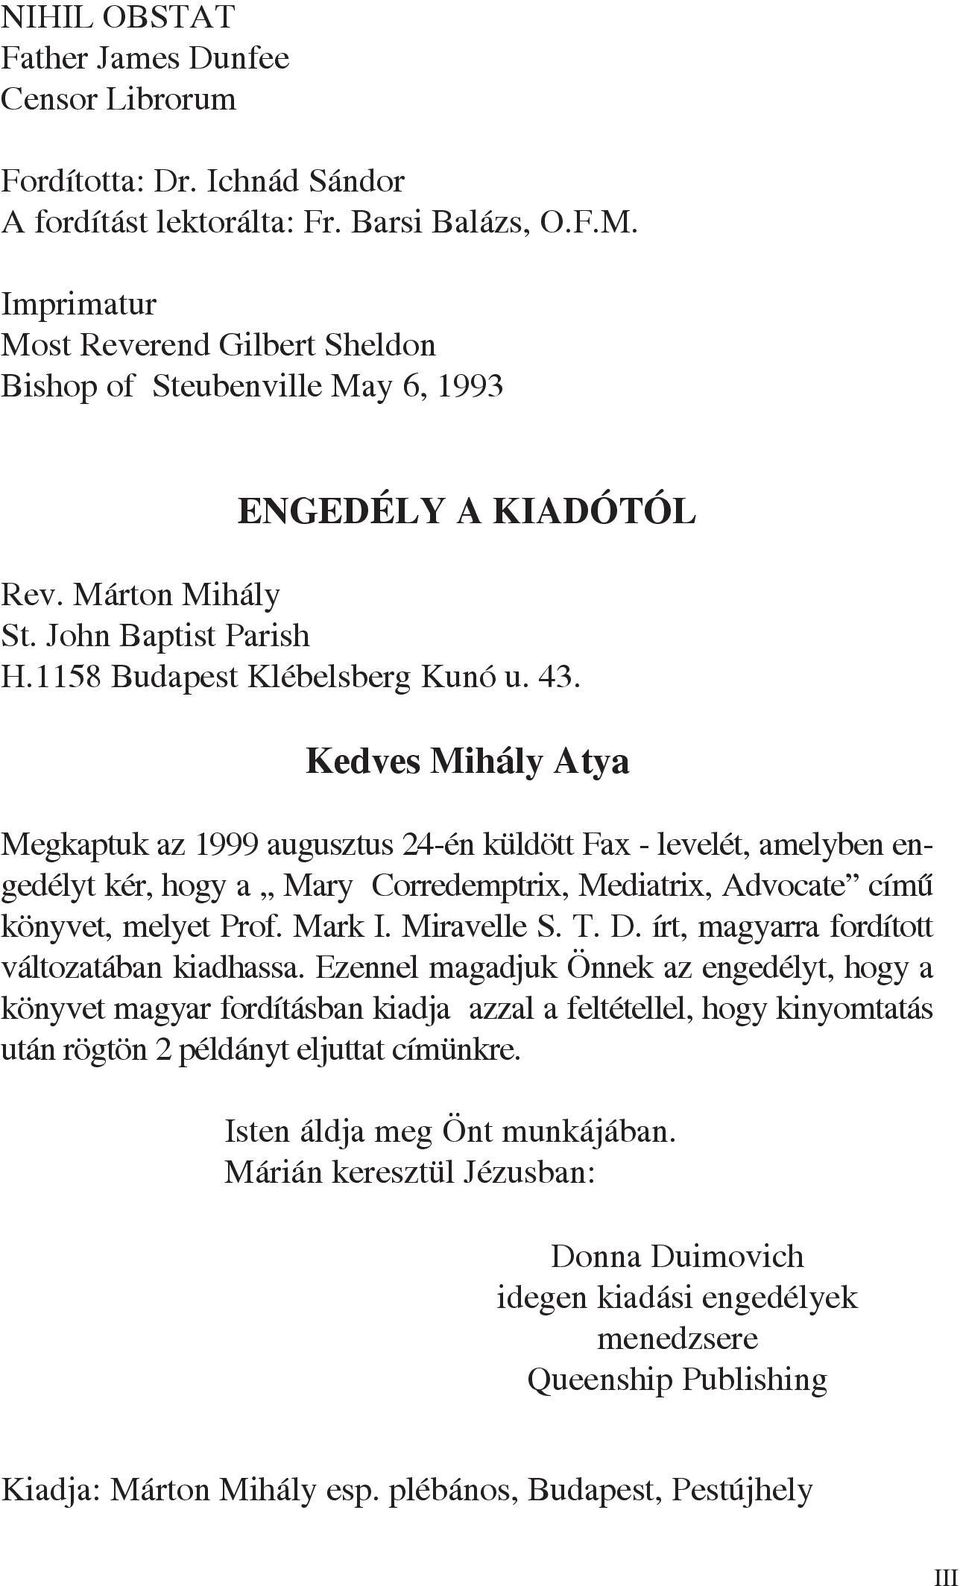 Kedves Mihály Atya Megkaptuk az 1999 augusztus 24-én küldött Fax - levelét, amelyben engedélyt kér, hogy a Mary Corredemptrix, Mediatrix, Advocate címû könyvet, melyet Prof. Mark I. Miravelle S. T. D.